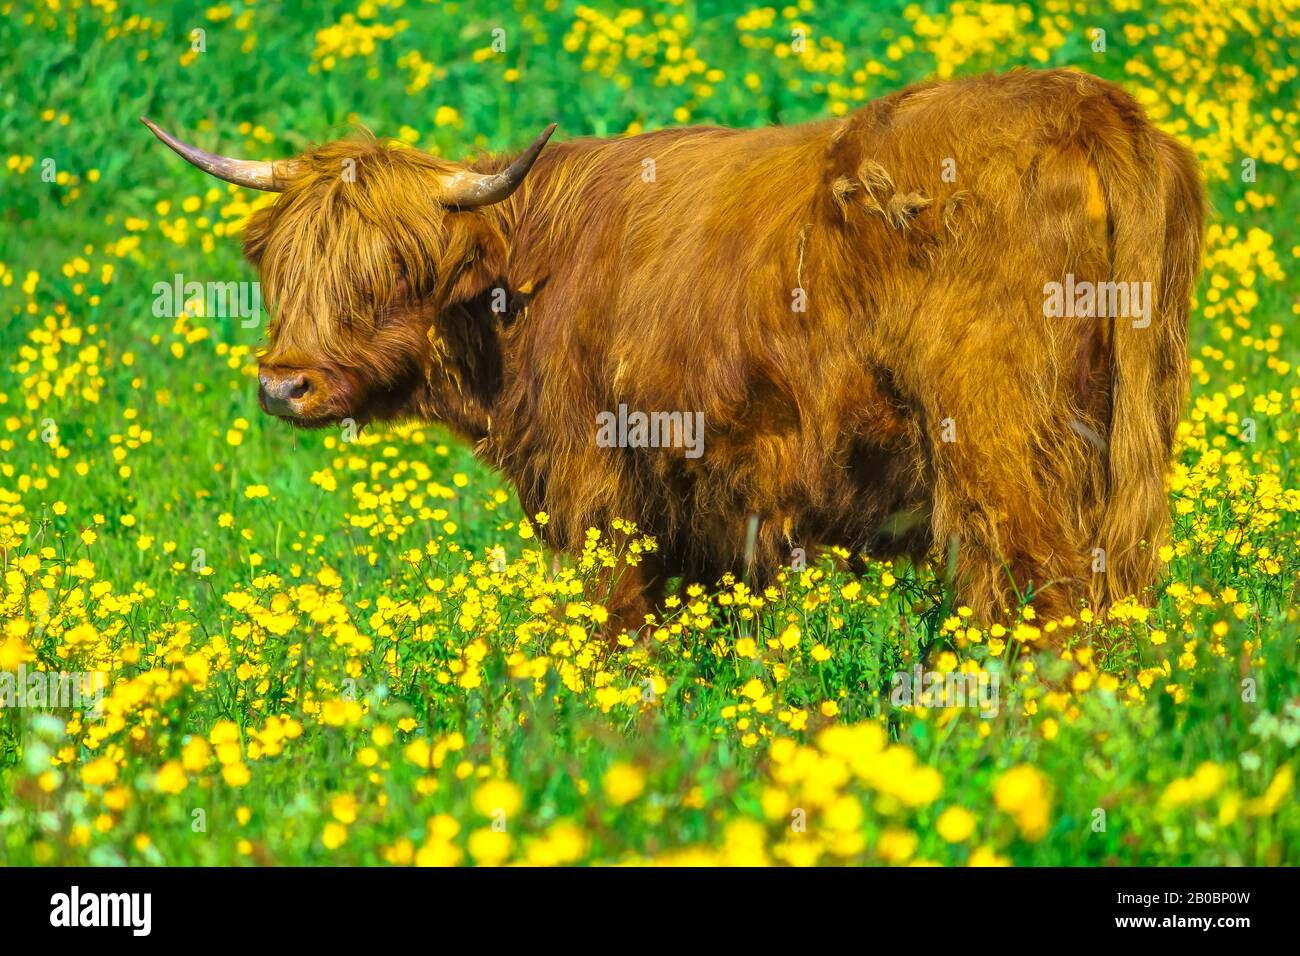 Vista laterale di un adulto Highland Red Cow originario delle Highlands scozzesi, seduto in un campo fiorito in primavera nel territorio norvegese. Foto Stock